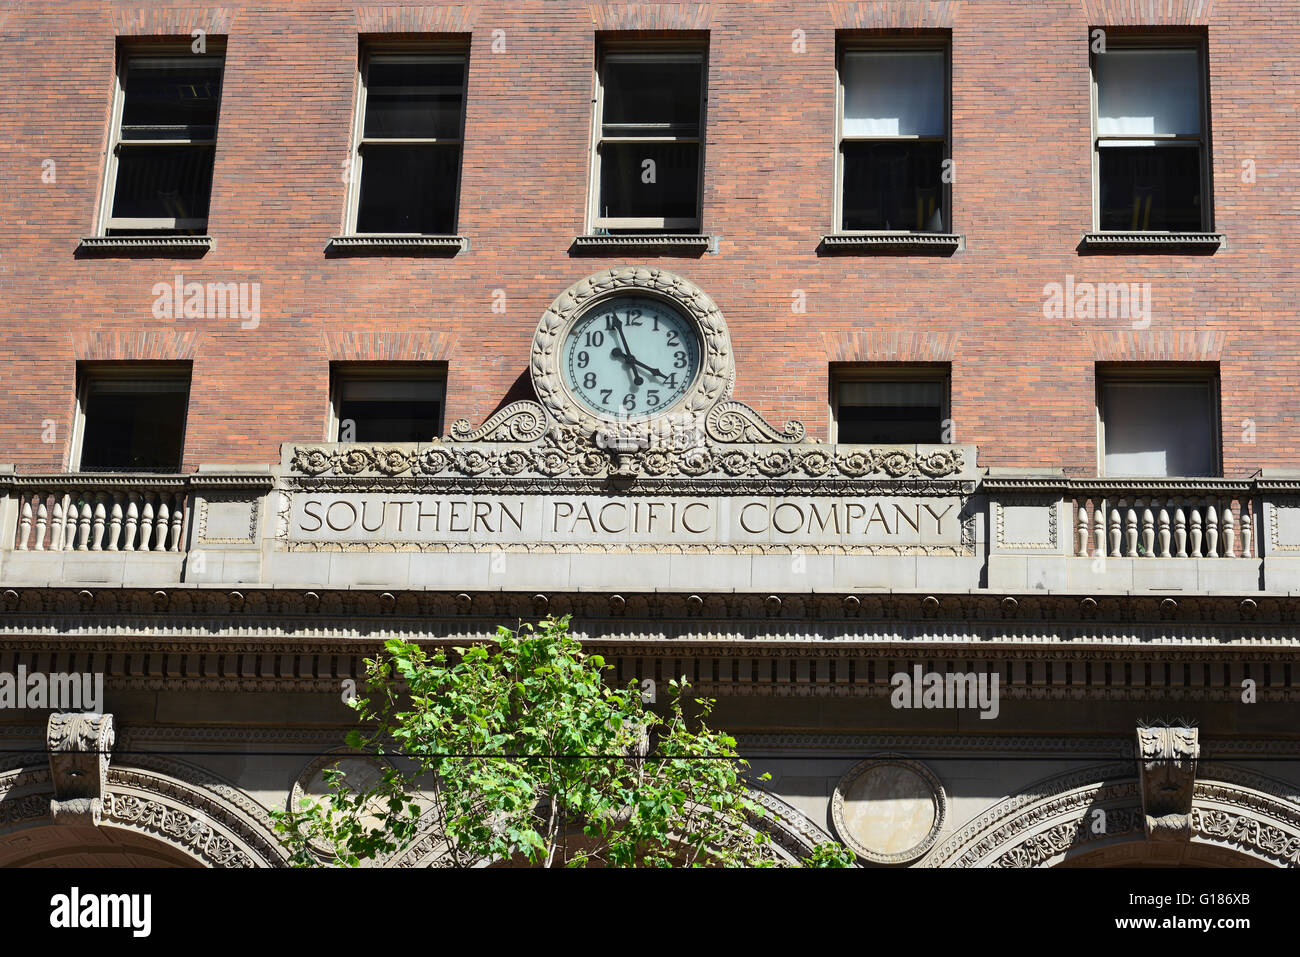 L'ancien bâtiment de la Compagnie du Pacifique Sud sur Market Street, San Francisco, California, USA Banque D'Images